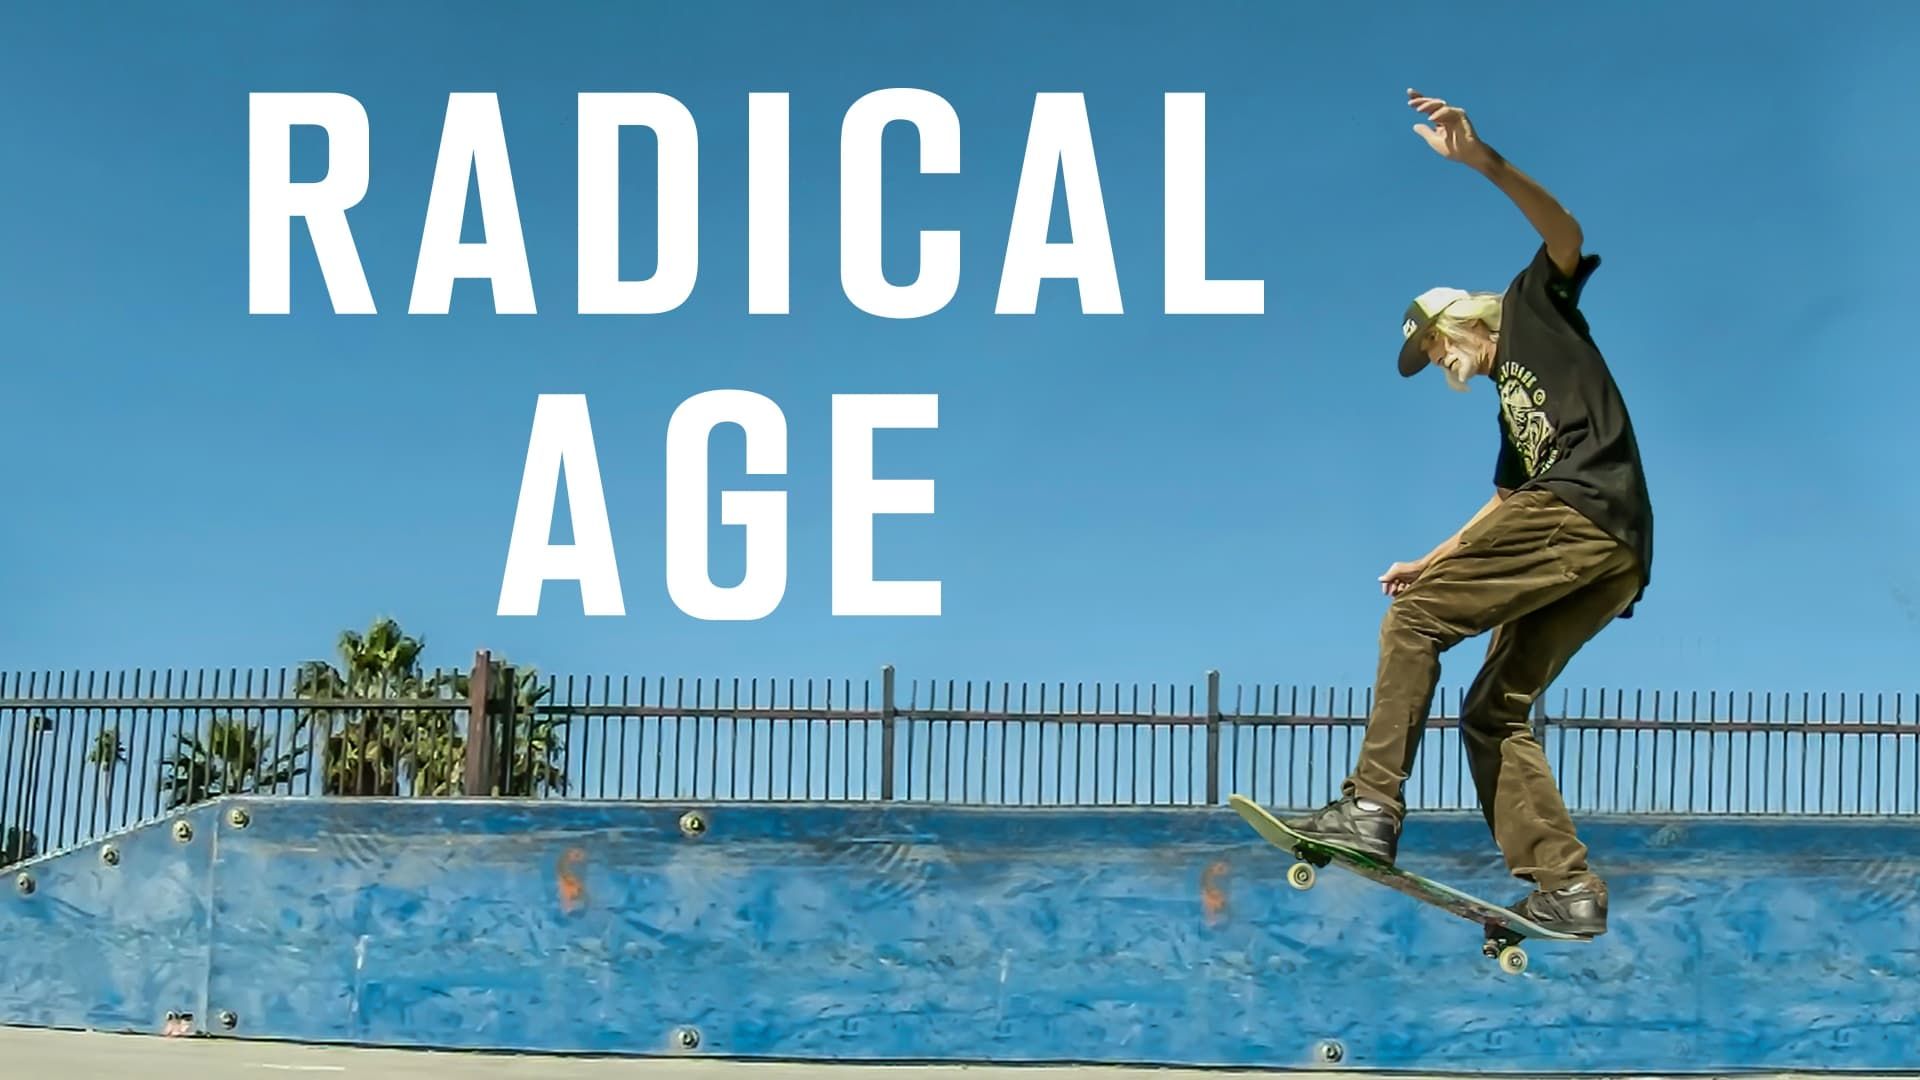 Radical Age background